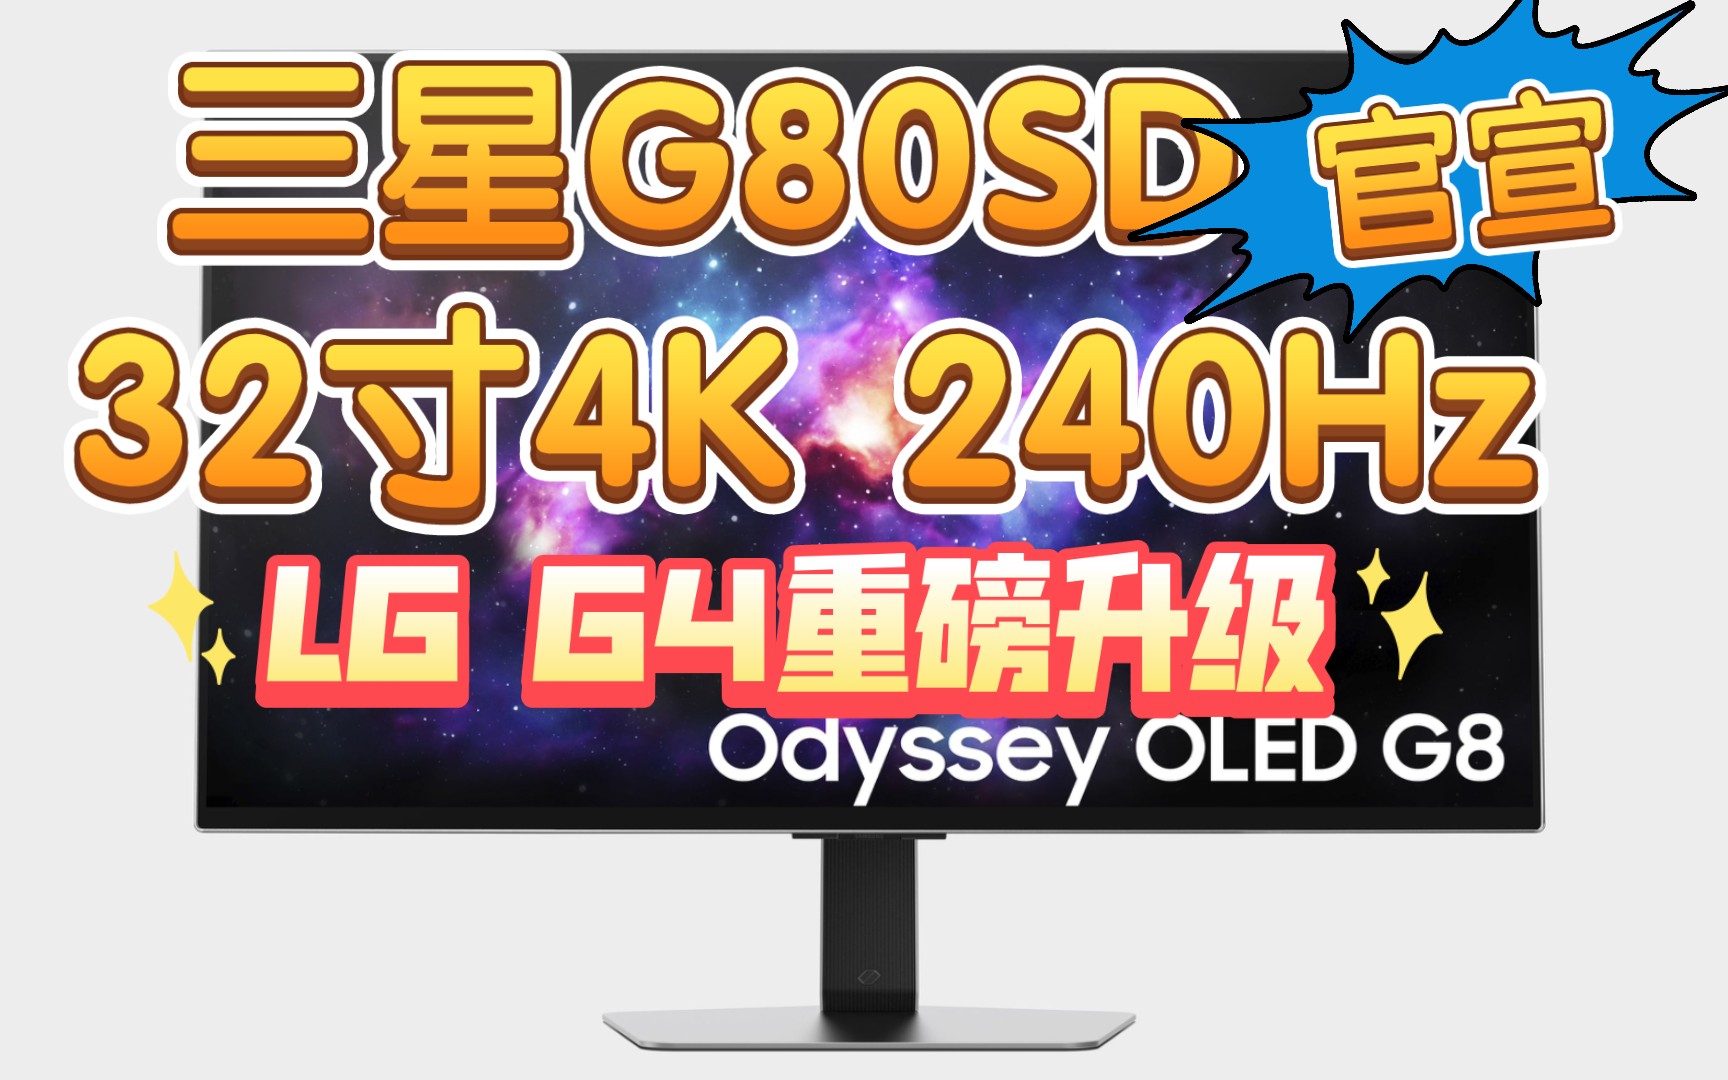 三星32寸4K 240Hz OLED显示器 G80SD正式官宣！LG G4重磅升级 11代AI芯片4K 144Hz拉满 CES见！